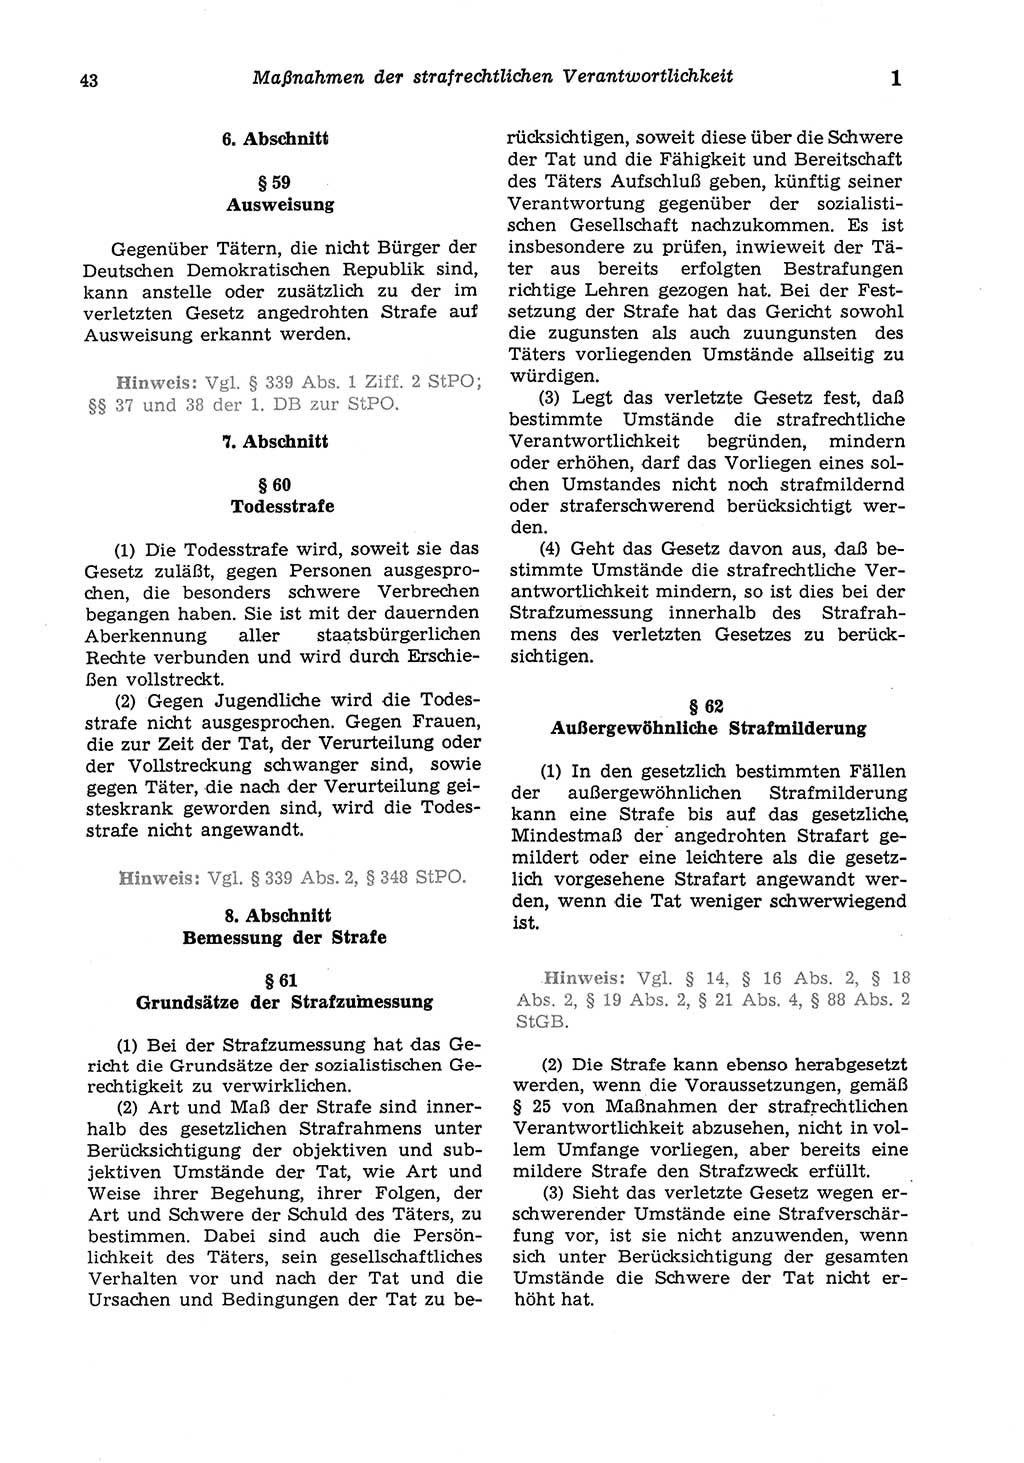 Strafgesetzbuch (StGB) der Deutschen Demokratischen Republik (DDR) und angrenzende Gesetze und Bestimmungen 1975, Seite 43 (StGB DDR Ges. Best. 1975, S. 43)